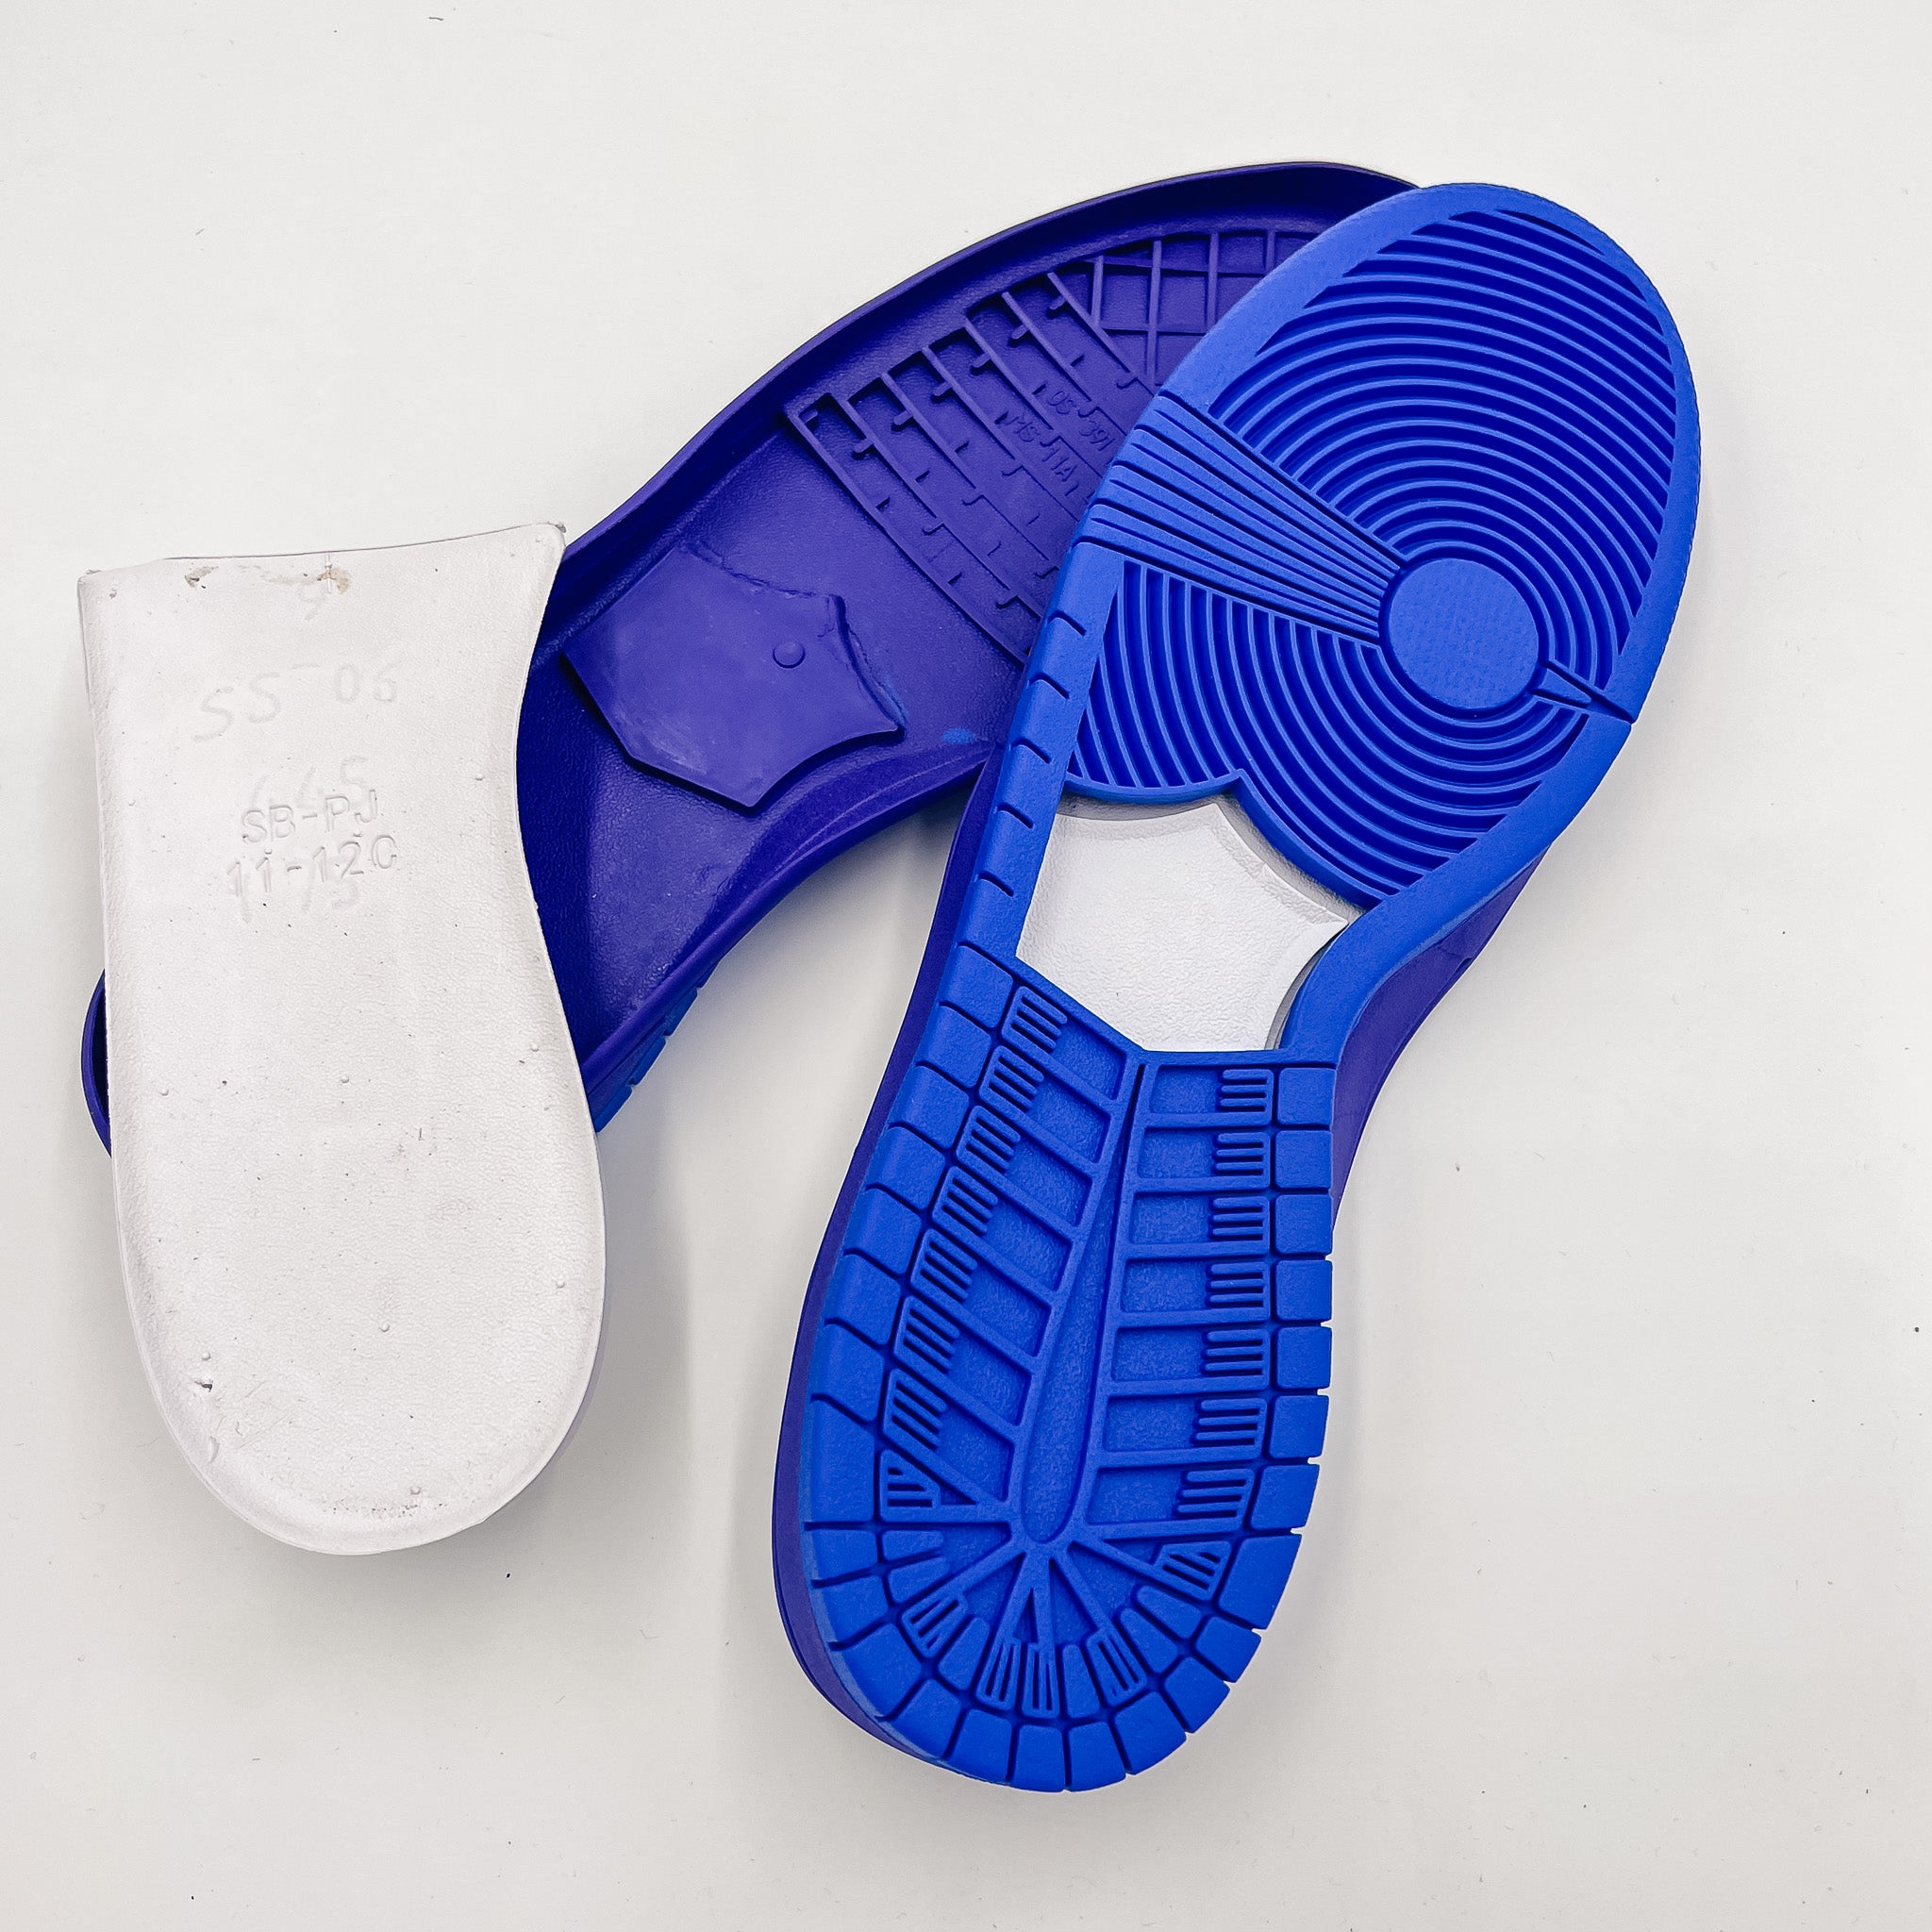 SkateBoard (SB Dunk) Shoe Soles, Purple/Blue